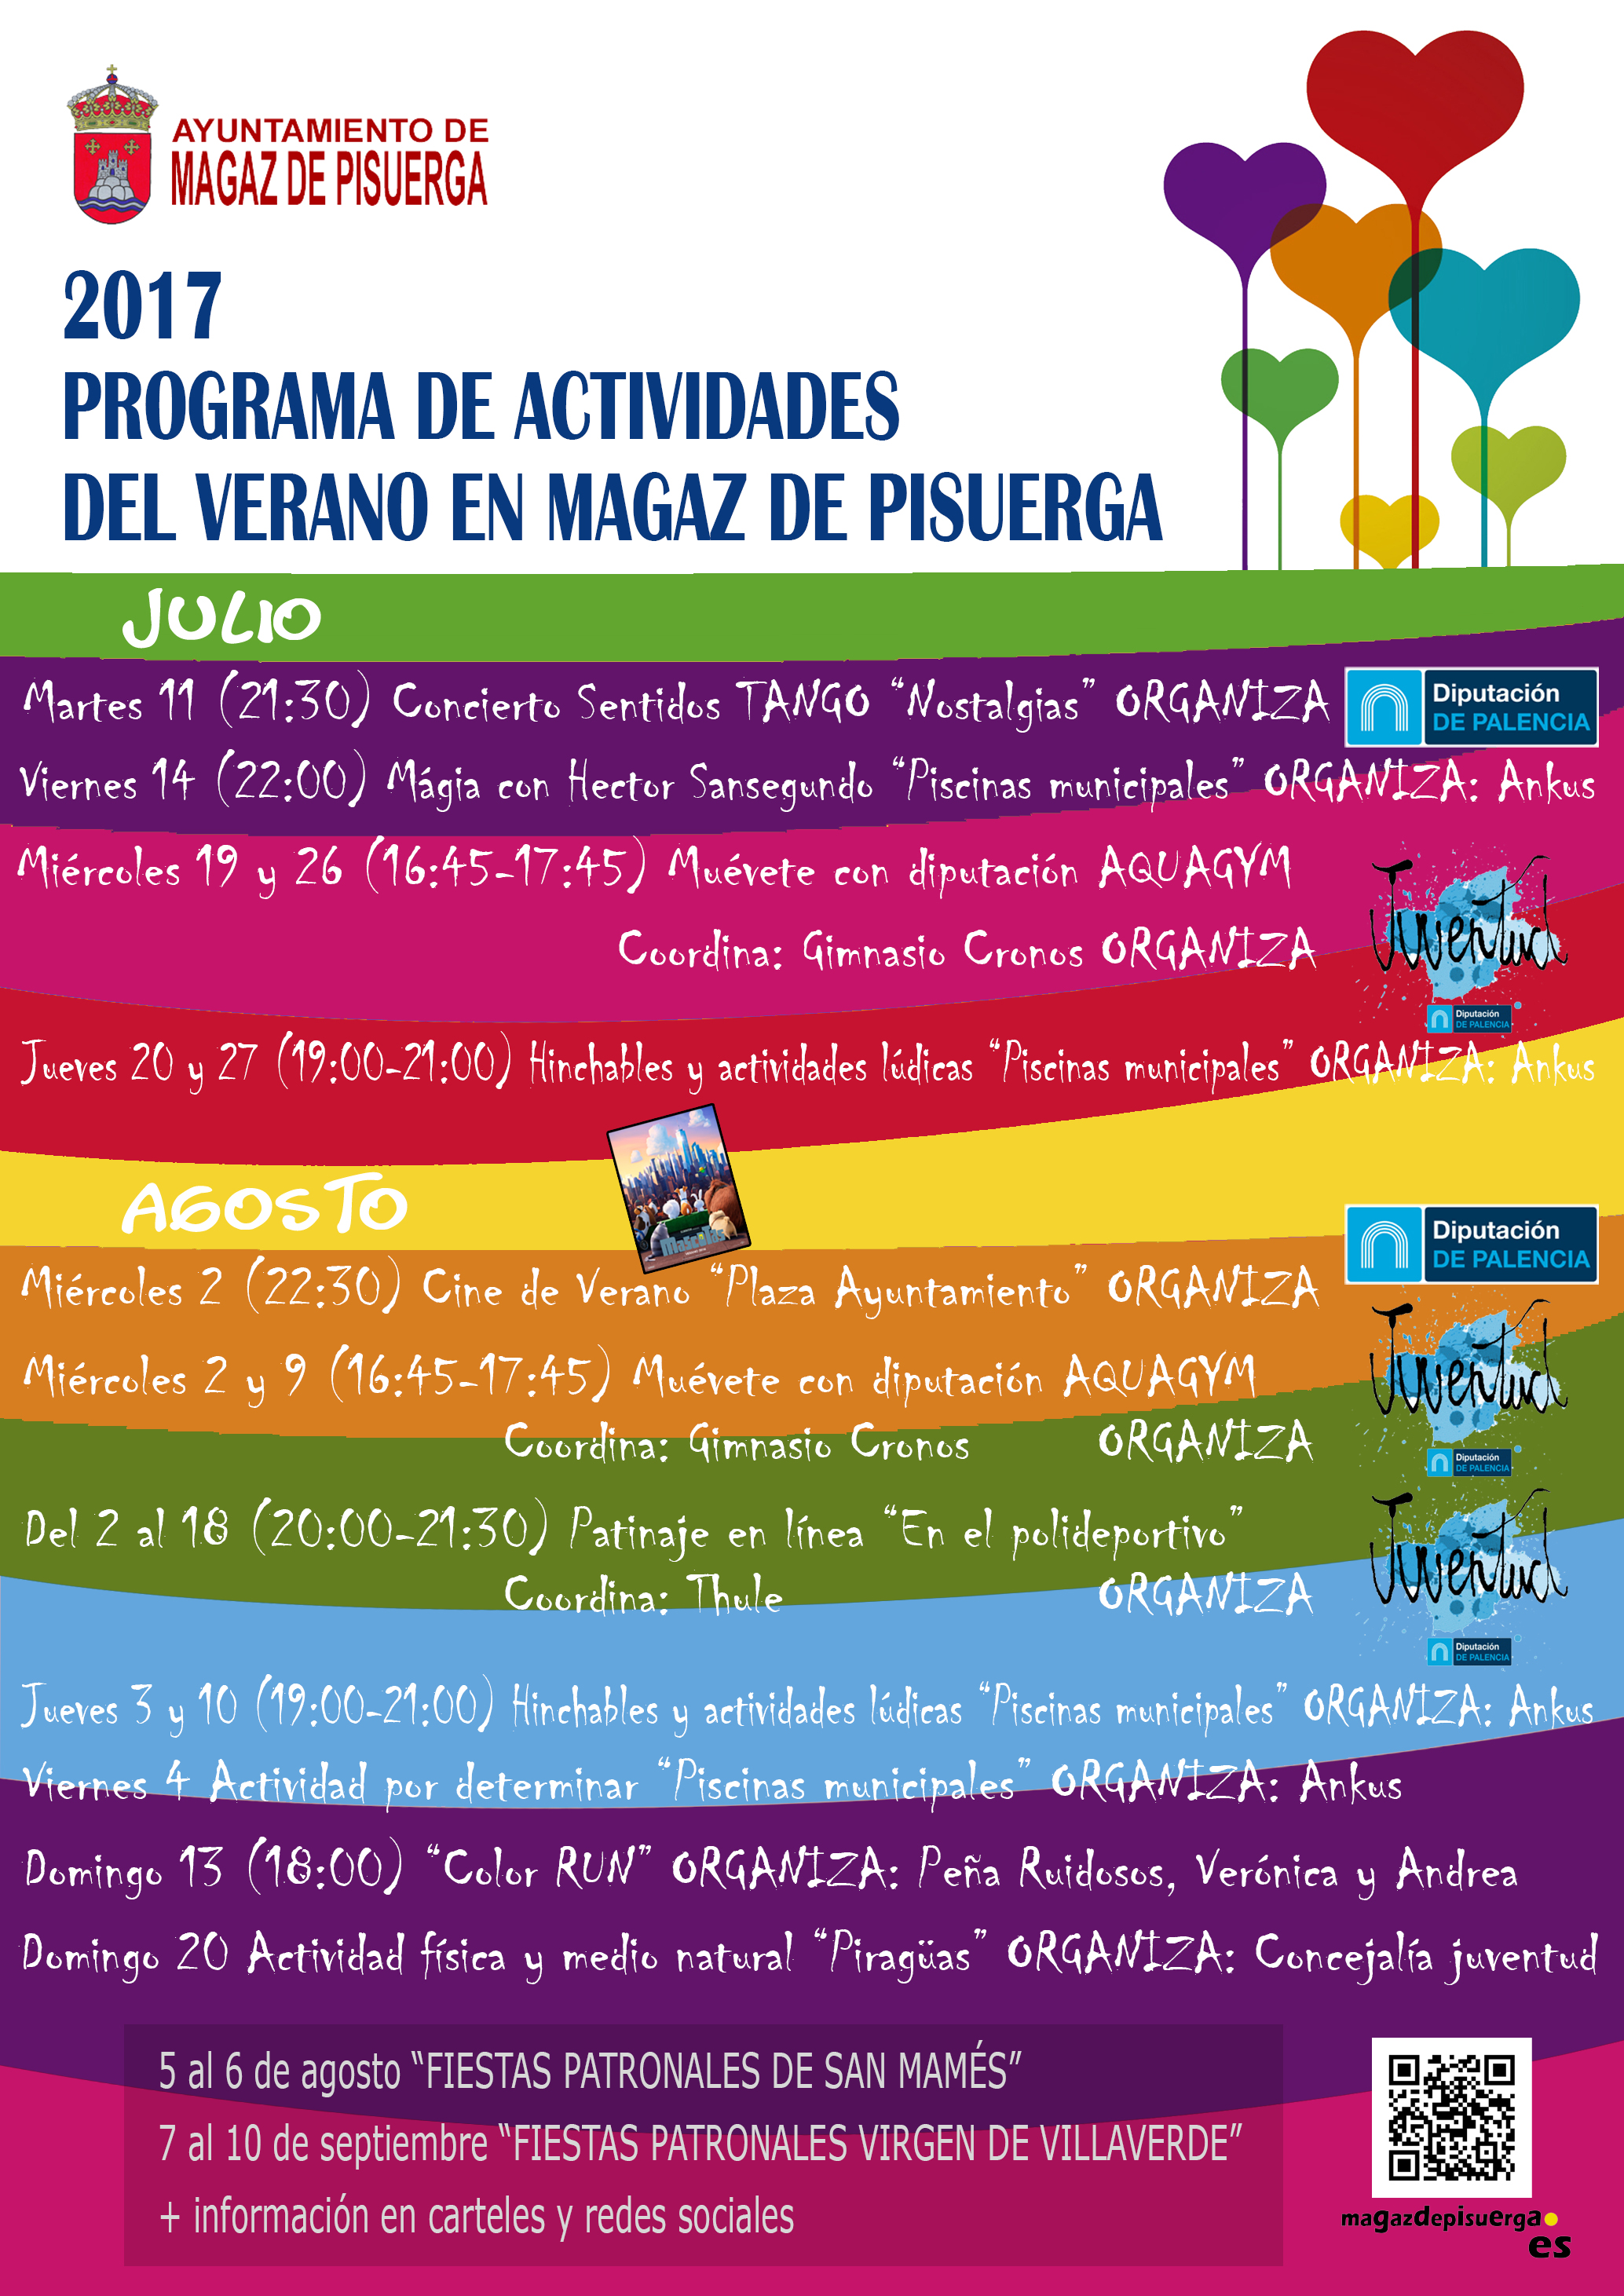 Programa de actividades del verano en Magaz de Pisuerga 2017